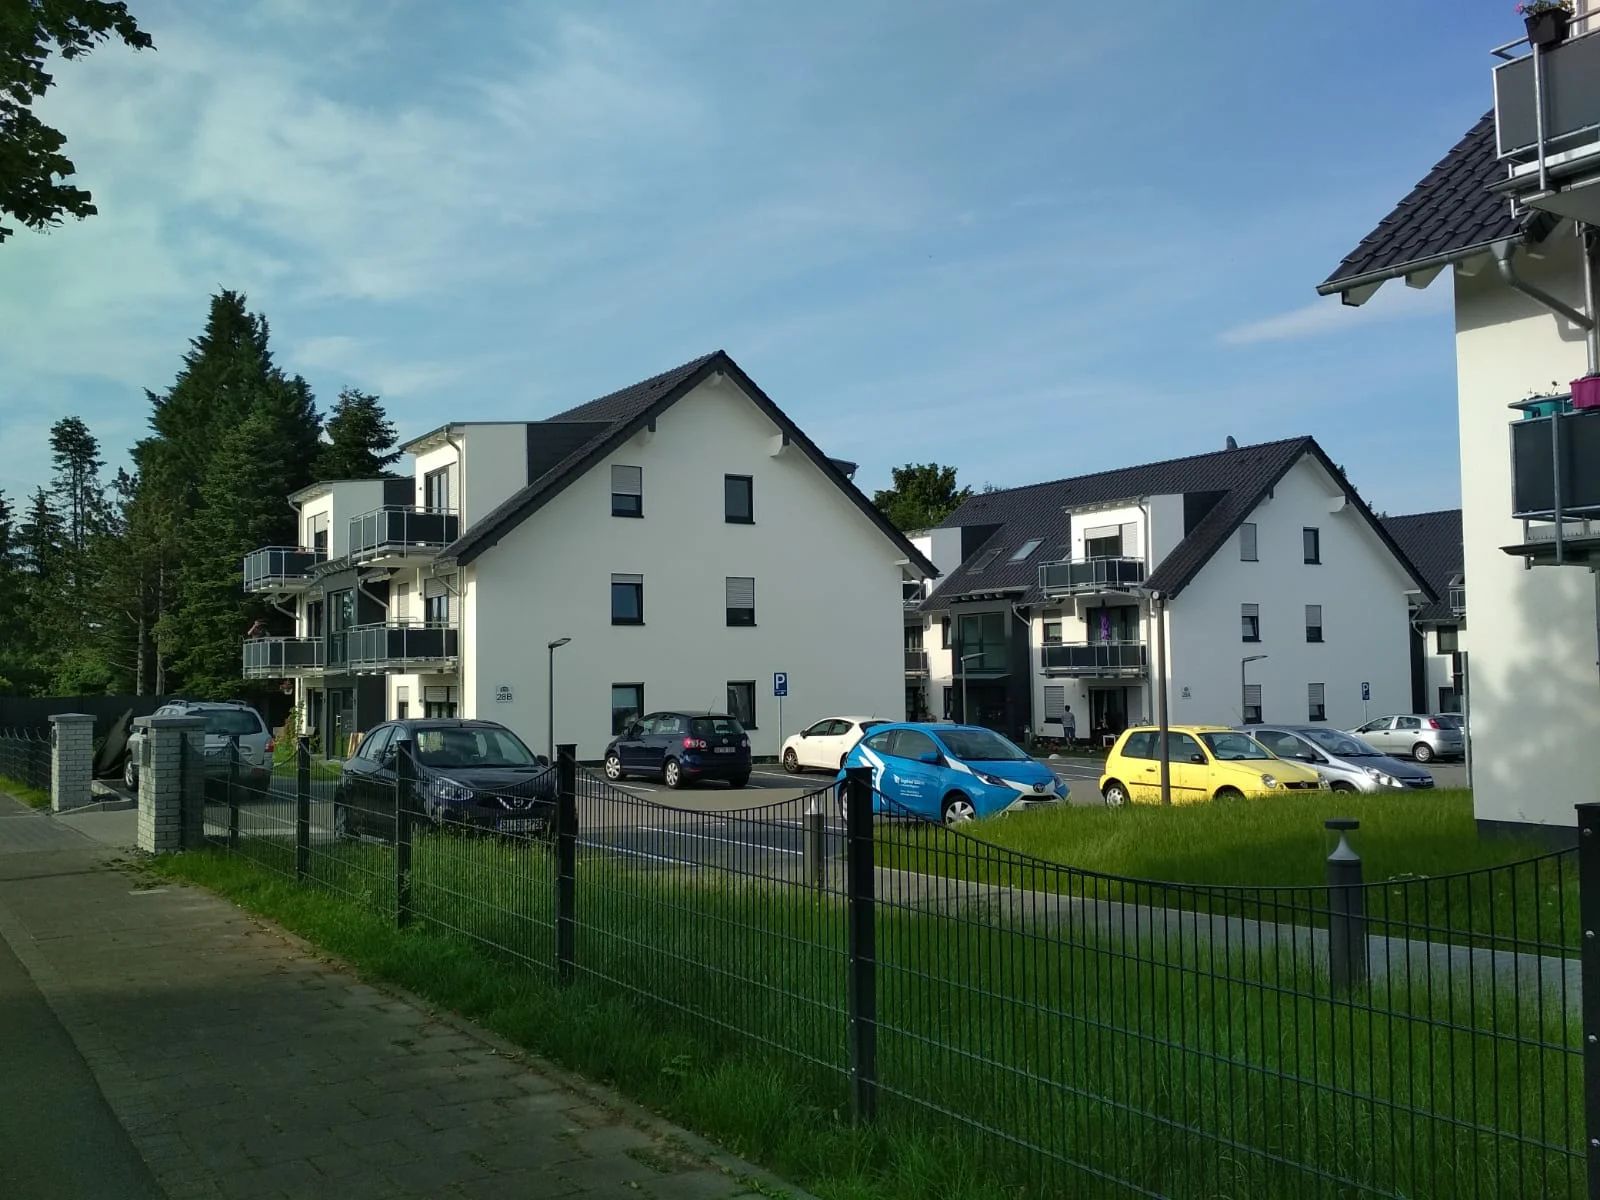 Можно ли получить внж в германии при покупке недвижимости в 2020 году? | internationalwealth.info